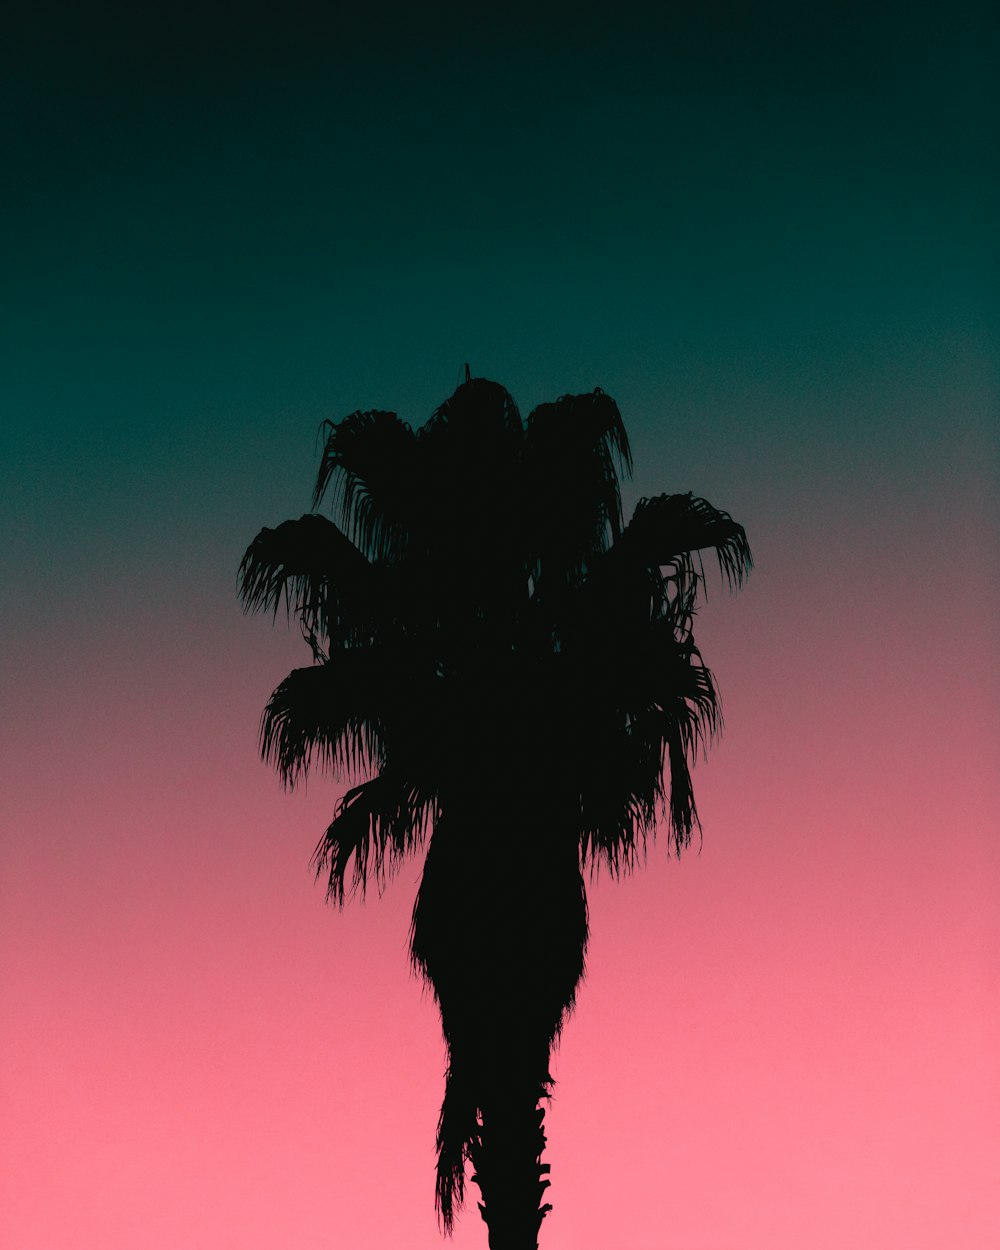 silhouette de palmier au coucher du soleil